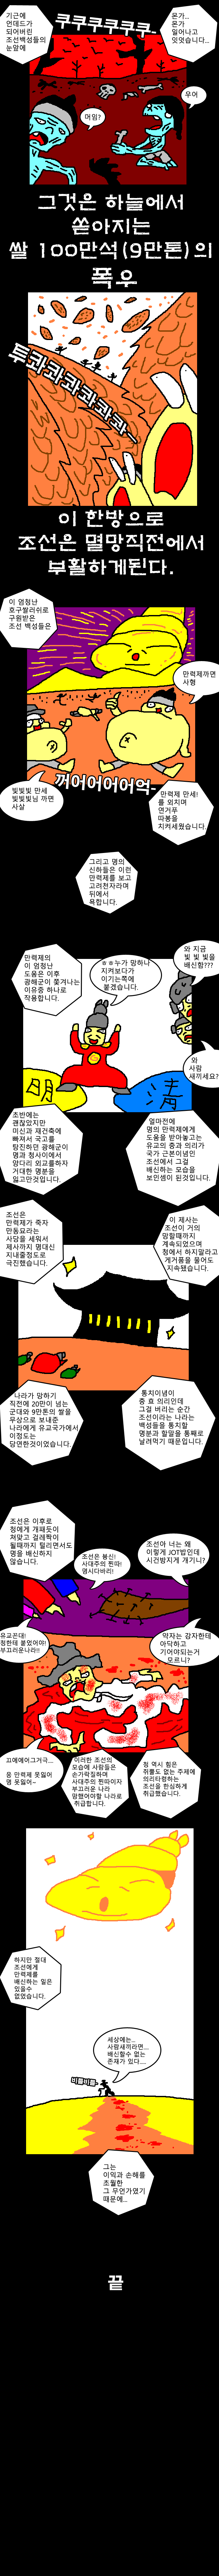 한국인들이 만력제를 좋아하는 이유